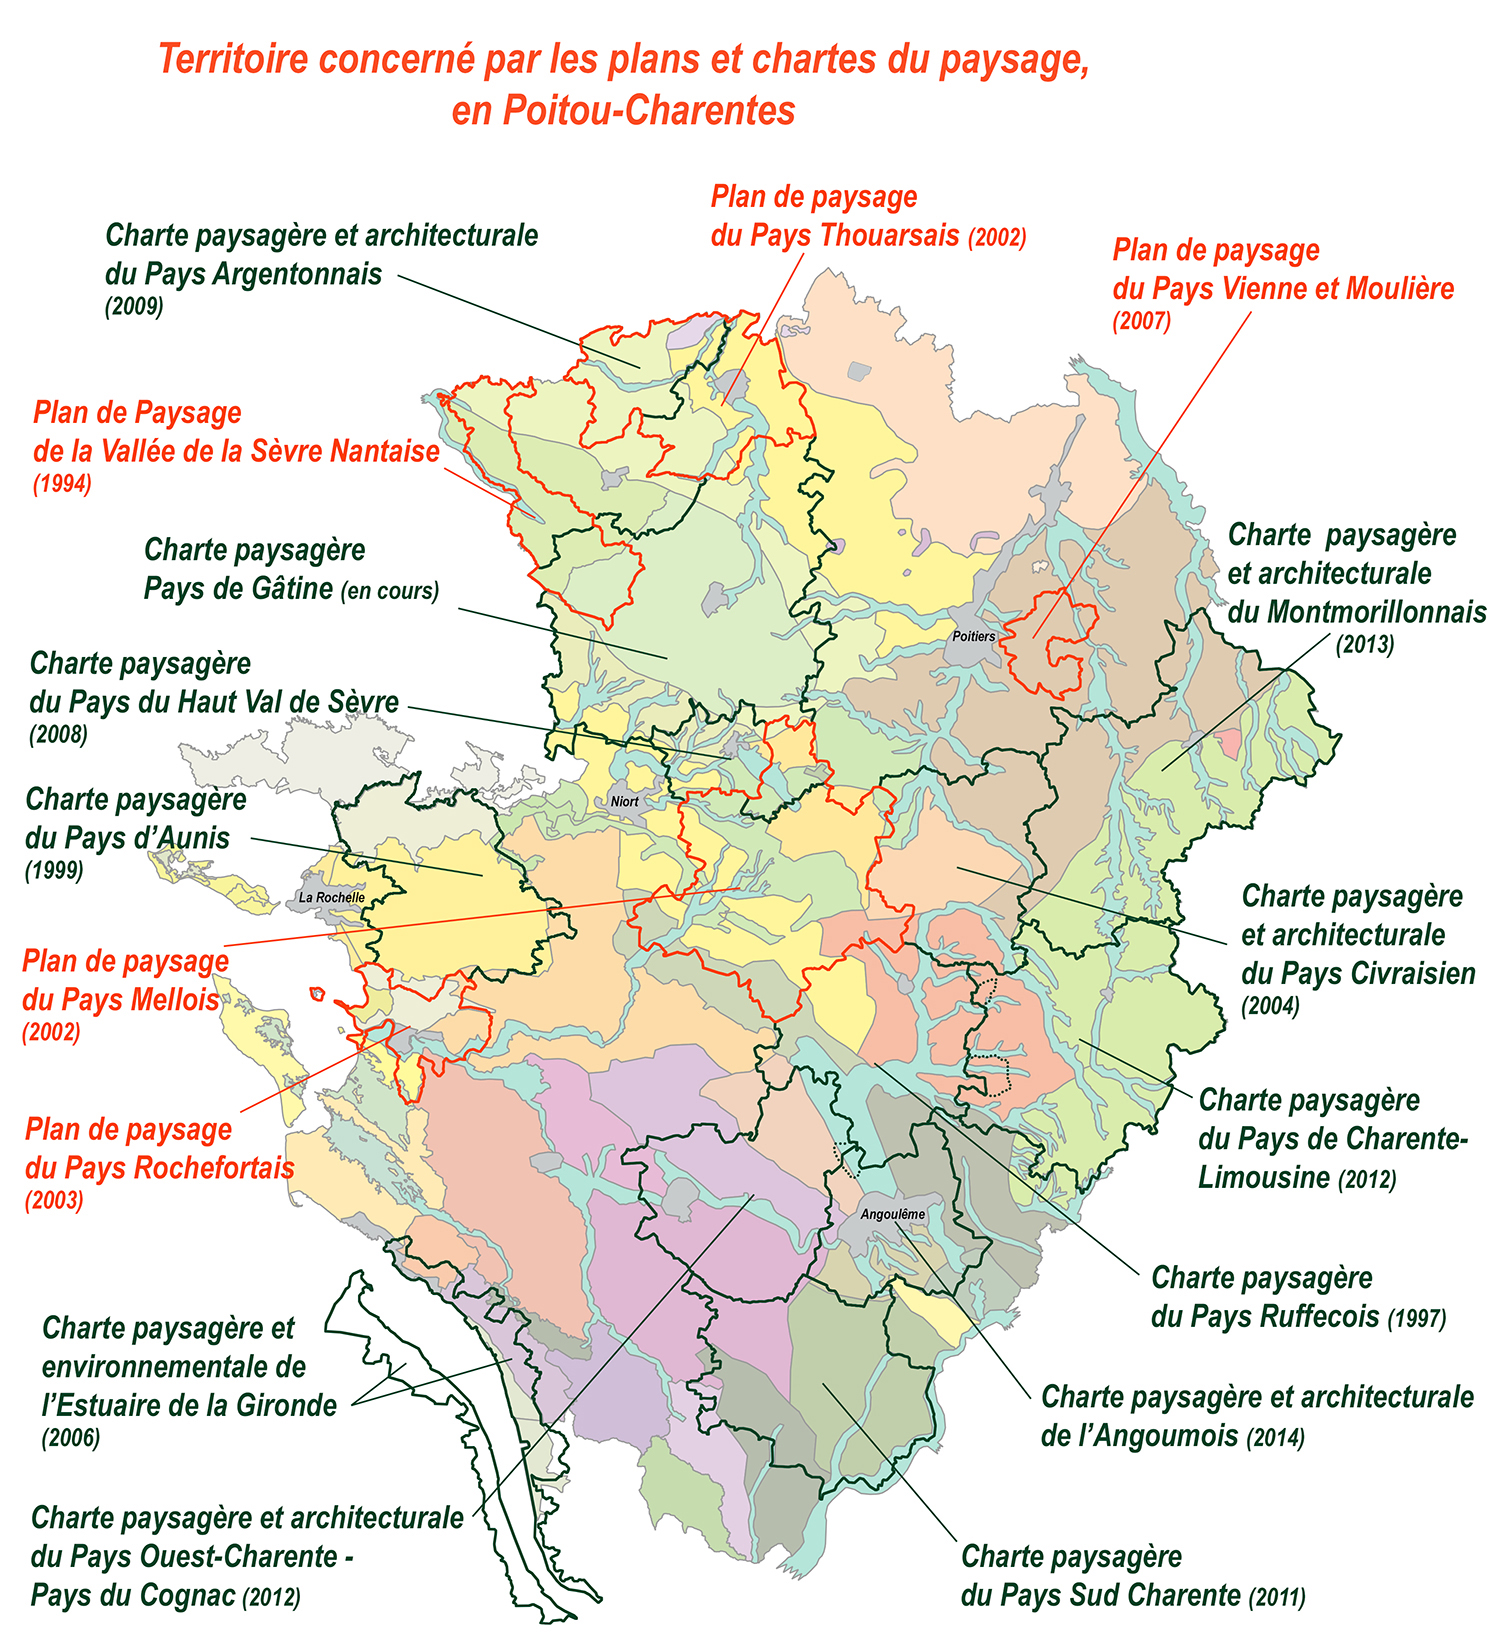 Carte des chartes et plans du paysage en Poitou-Charentes 2016 © CEN-PC